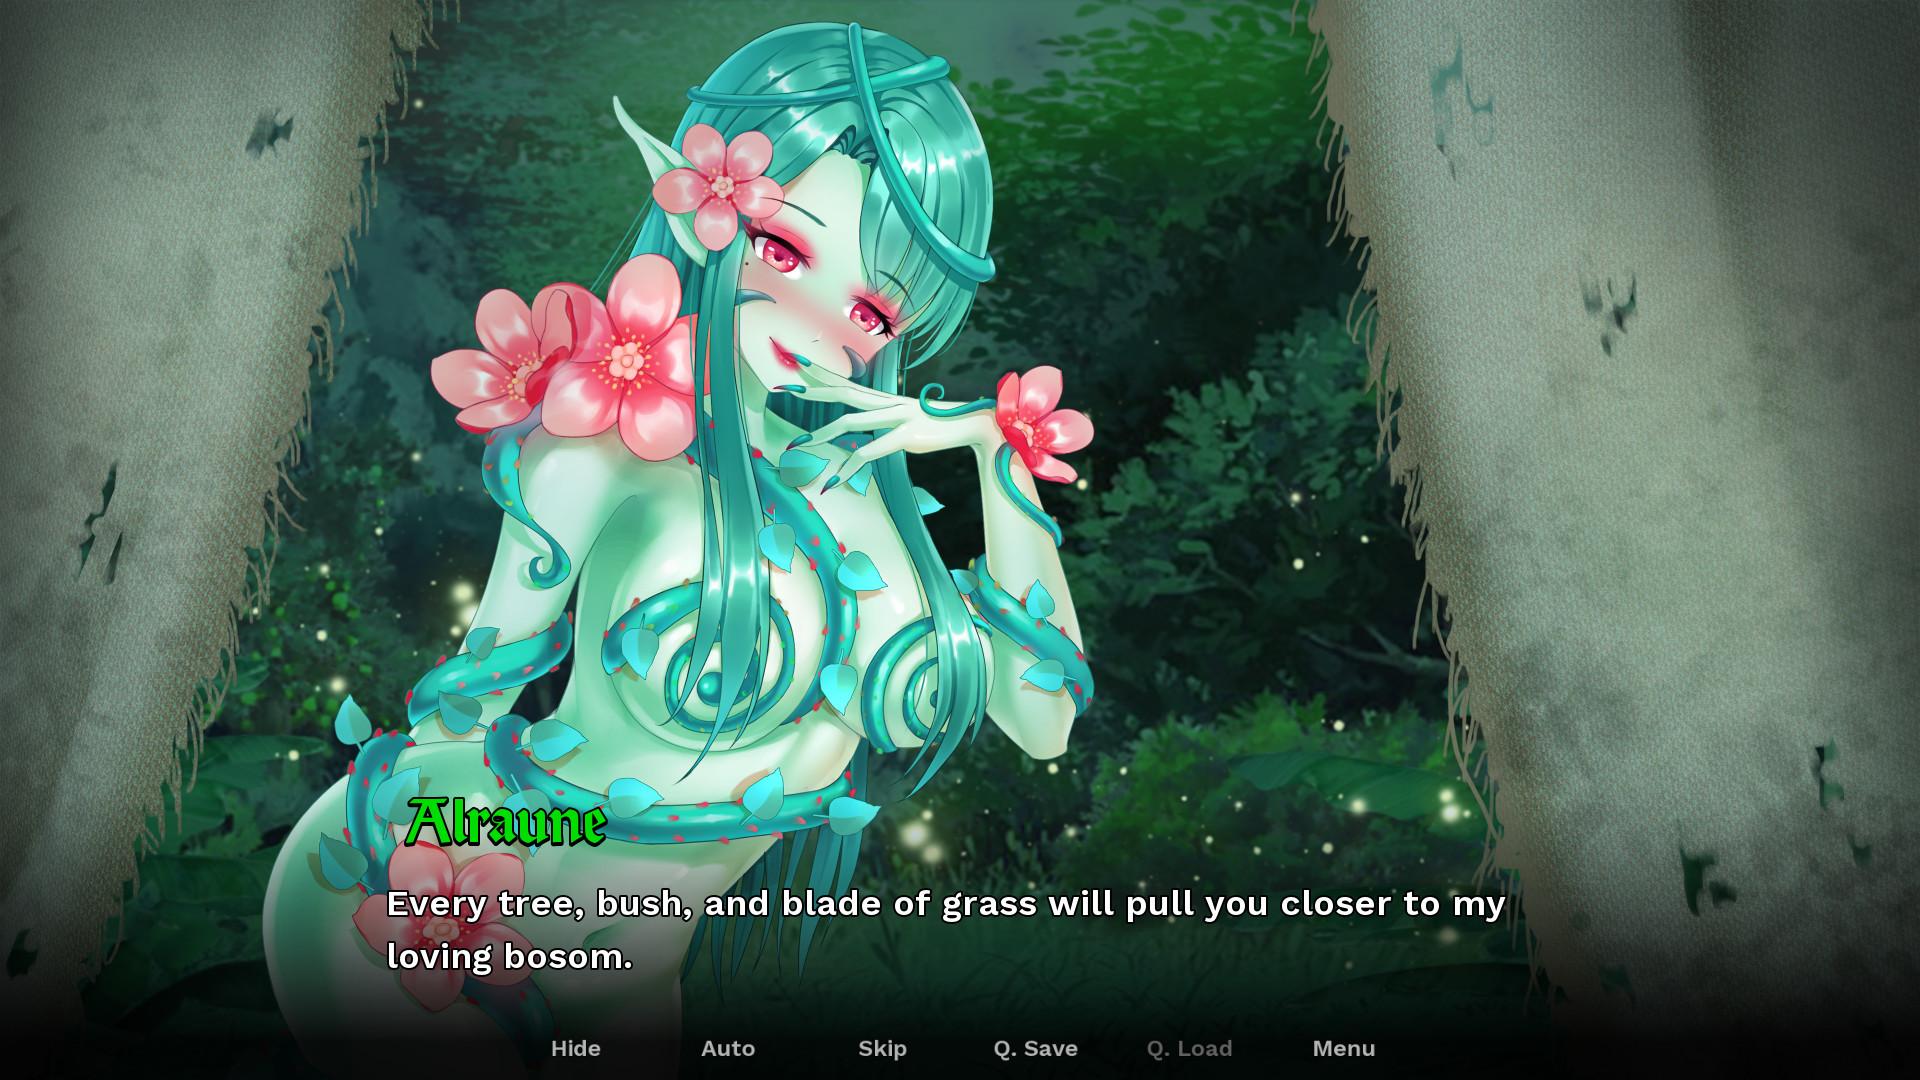 Screenshot №2 from game Steamy Sextet